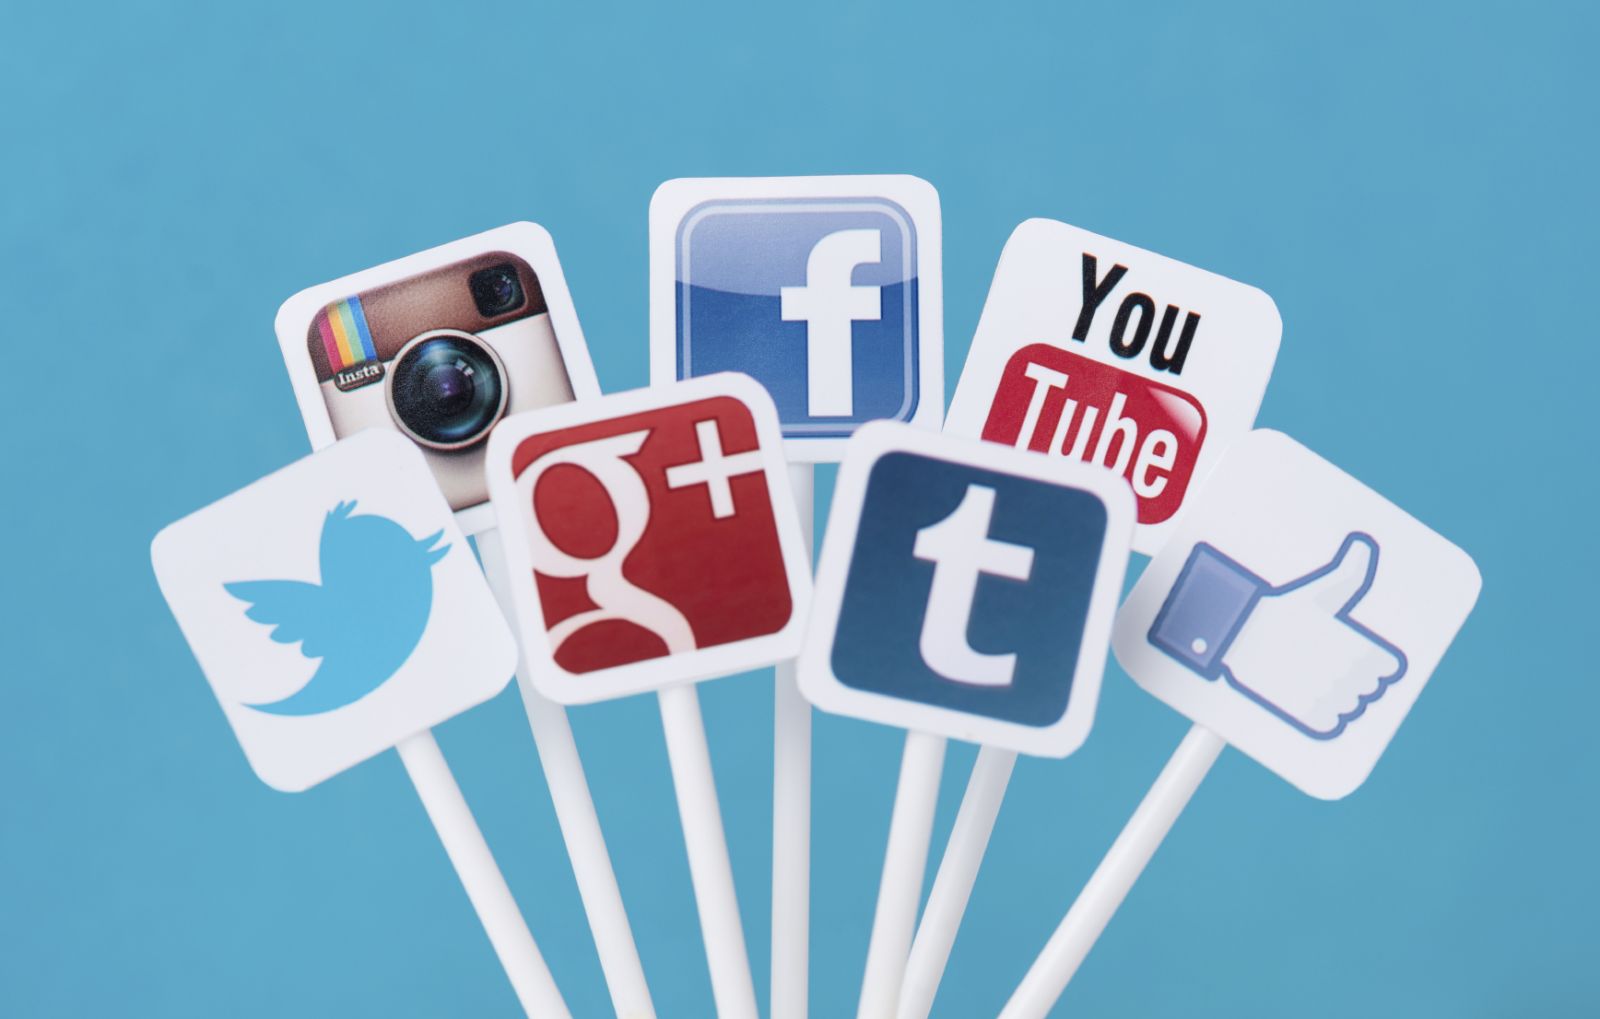 Studio statistico sui social: 1 italiano su 3 non distingue pubblicità dai post reali su Facebook e Instagram